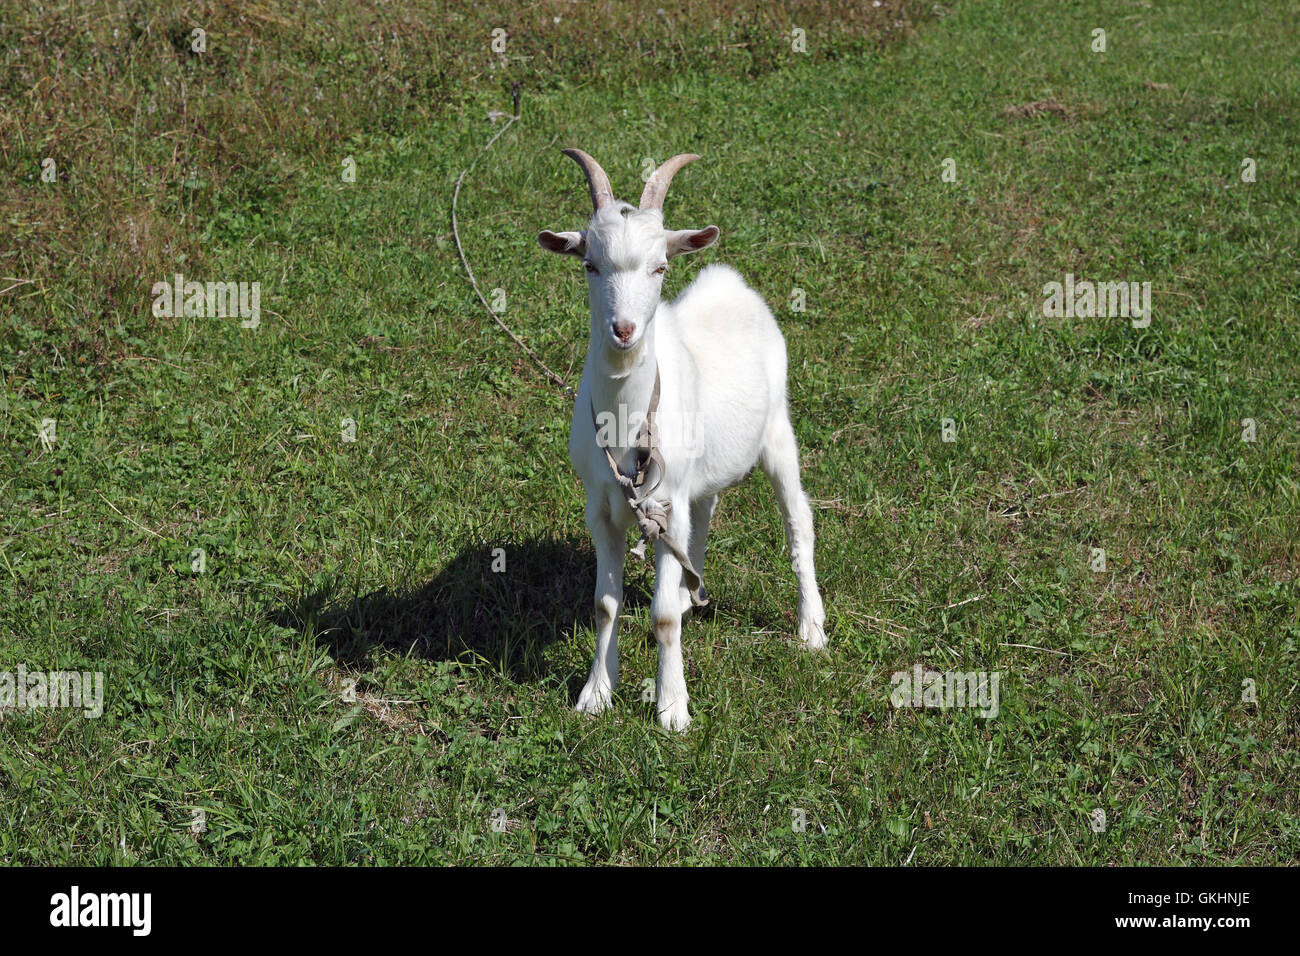 The white goat Stock Photo